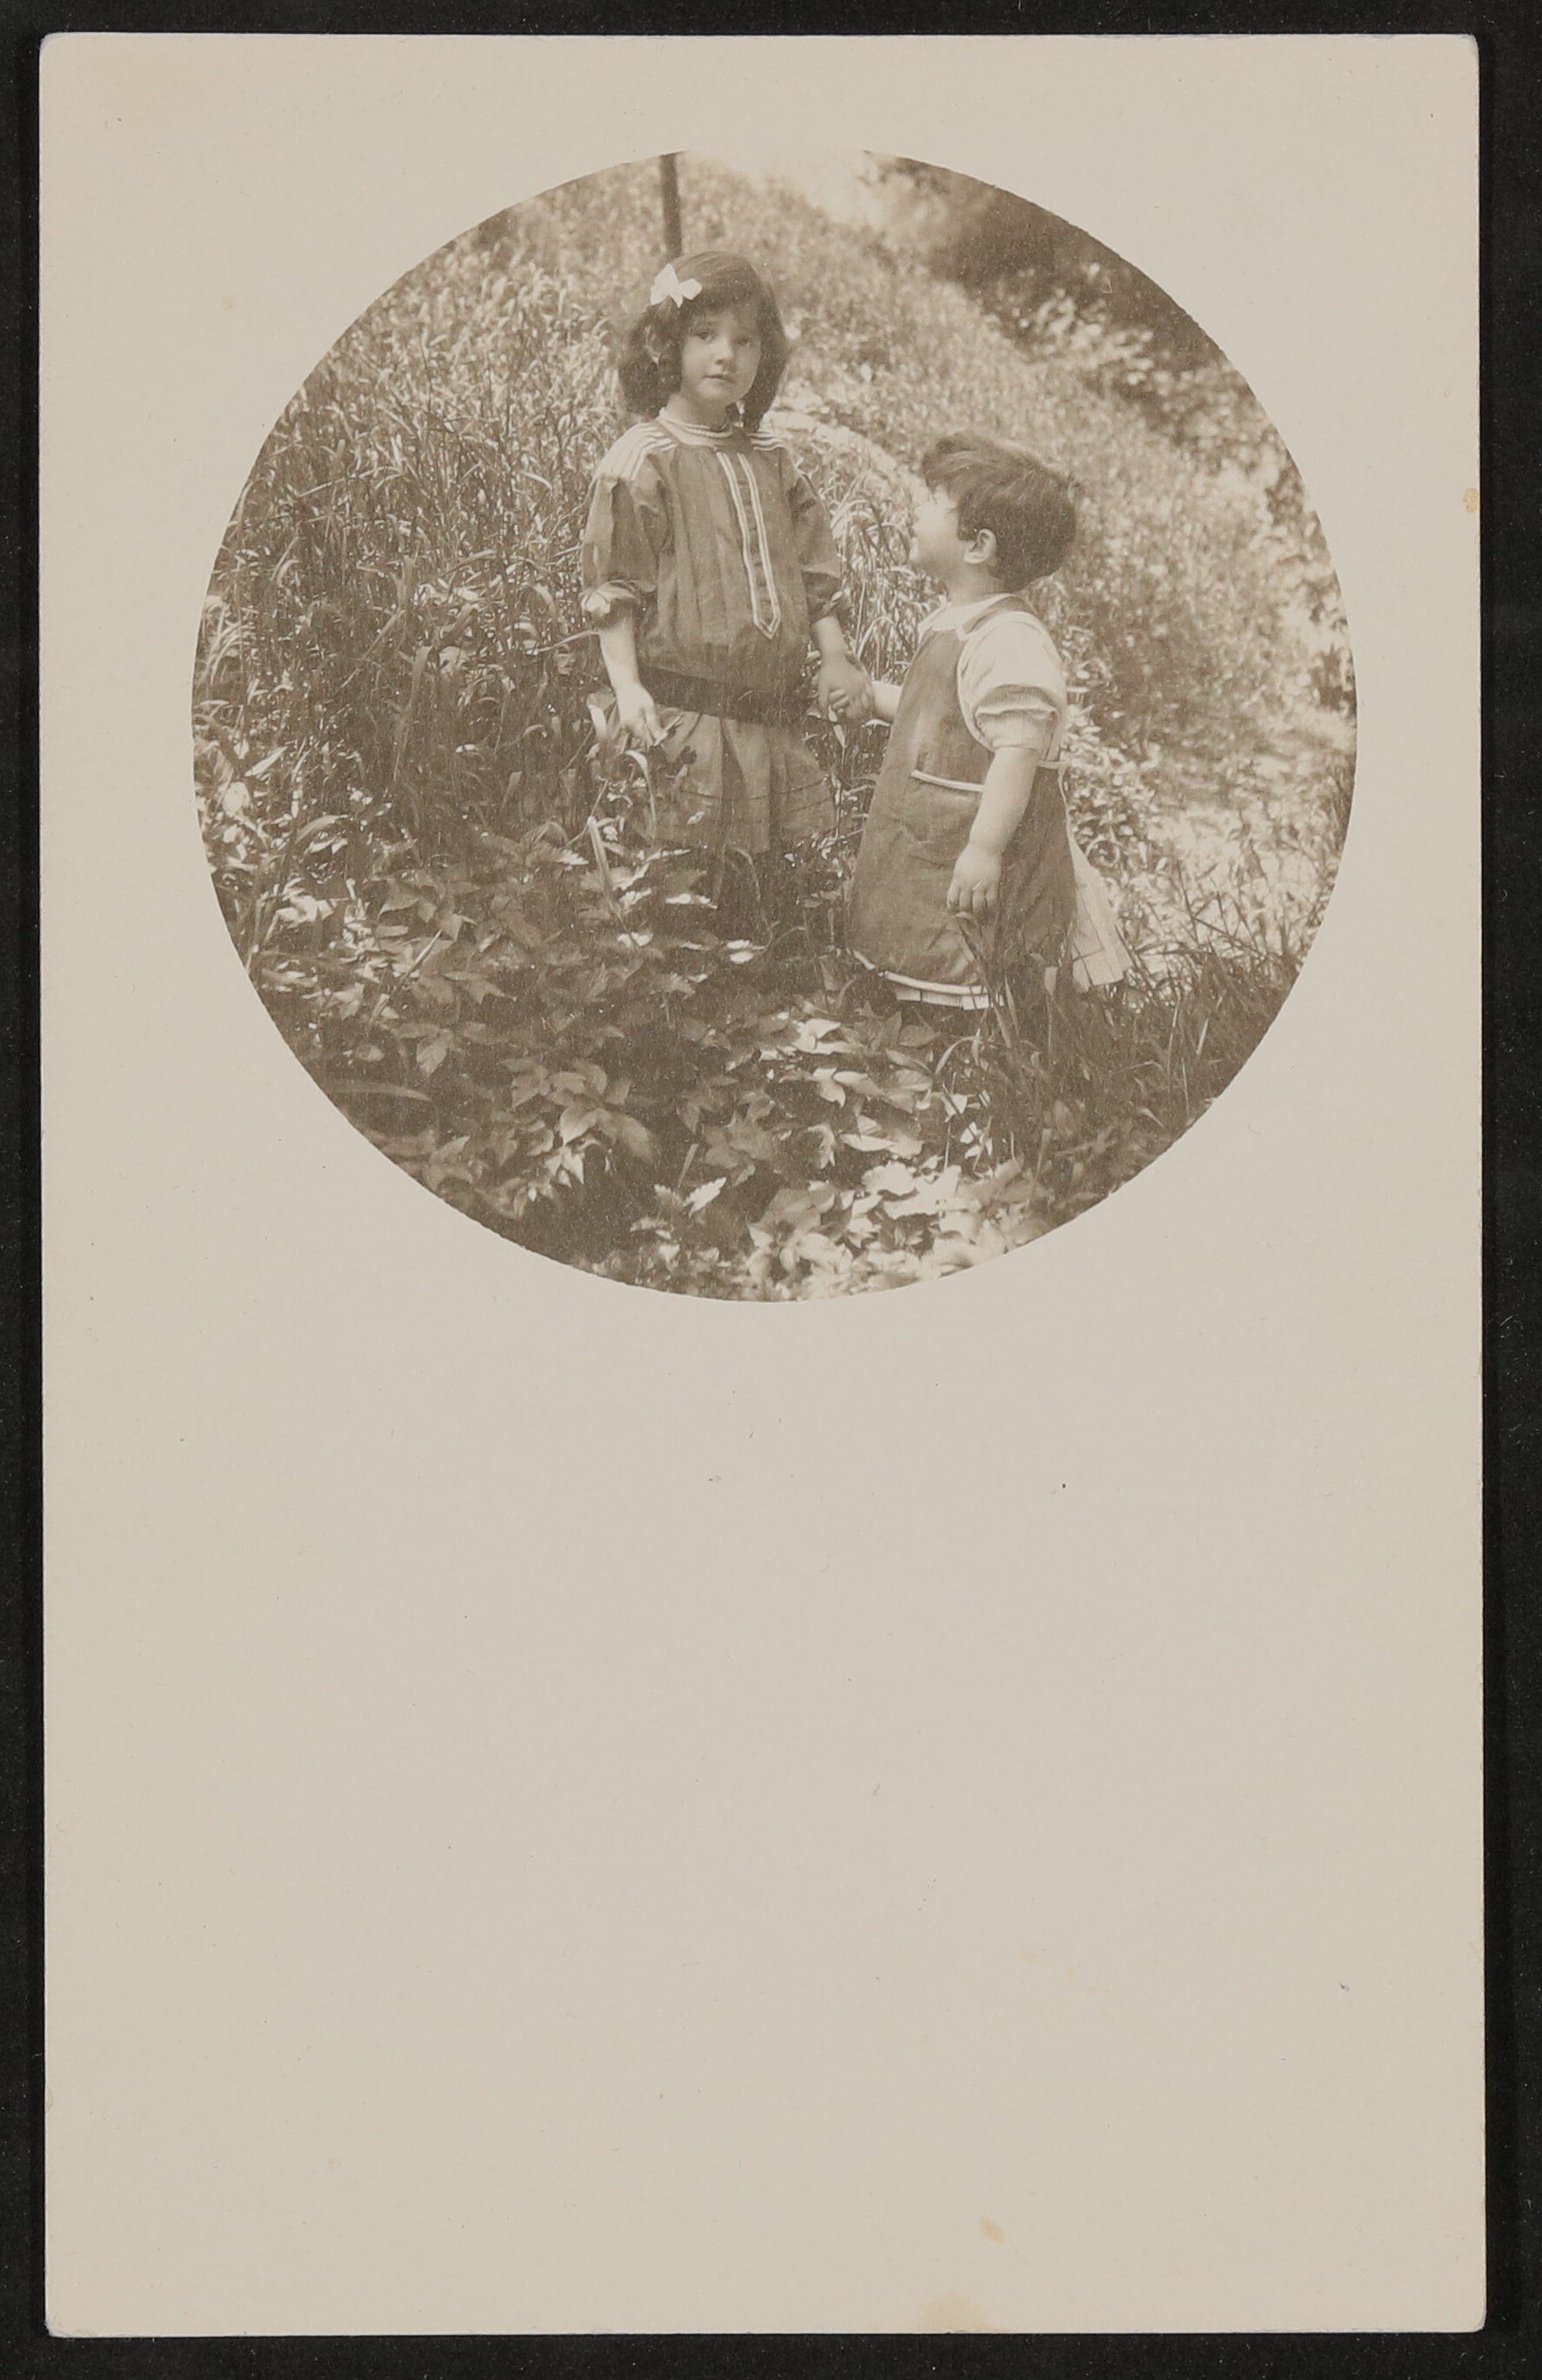 Christiane und Franz von Hofmannsthal als Kinder Hand in Hand auf einer Wiese (Freies Deutsches Hochstift / Frankfurter Goethe-Museum CC BY-NC-SA)